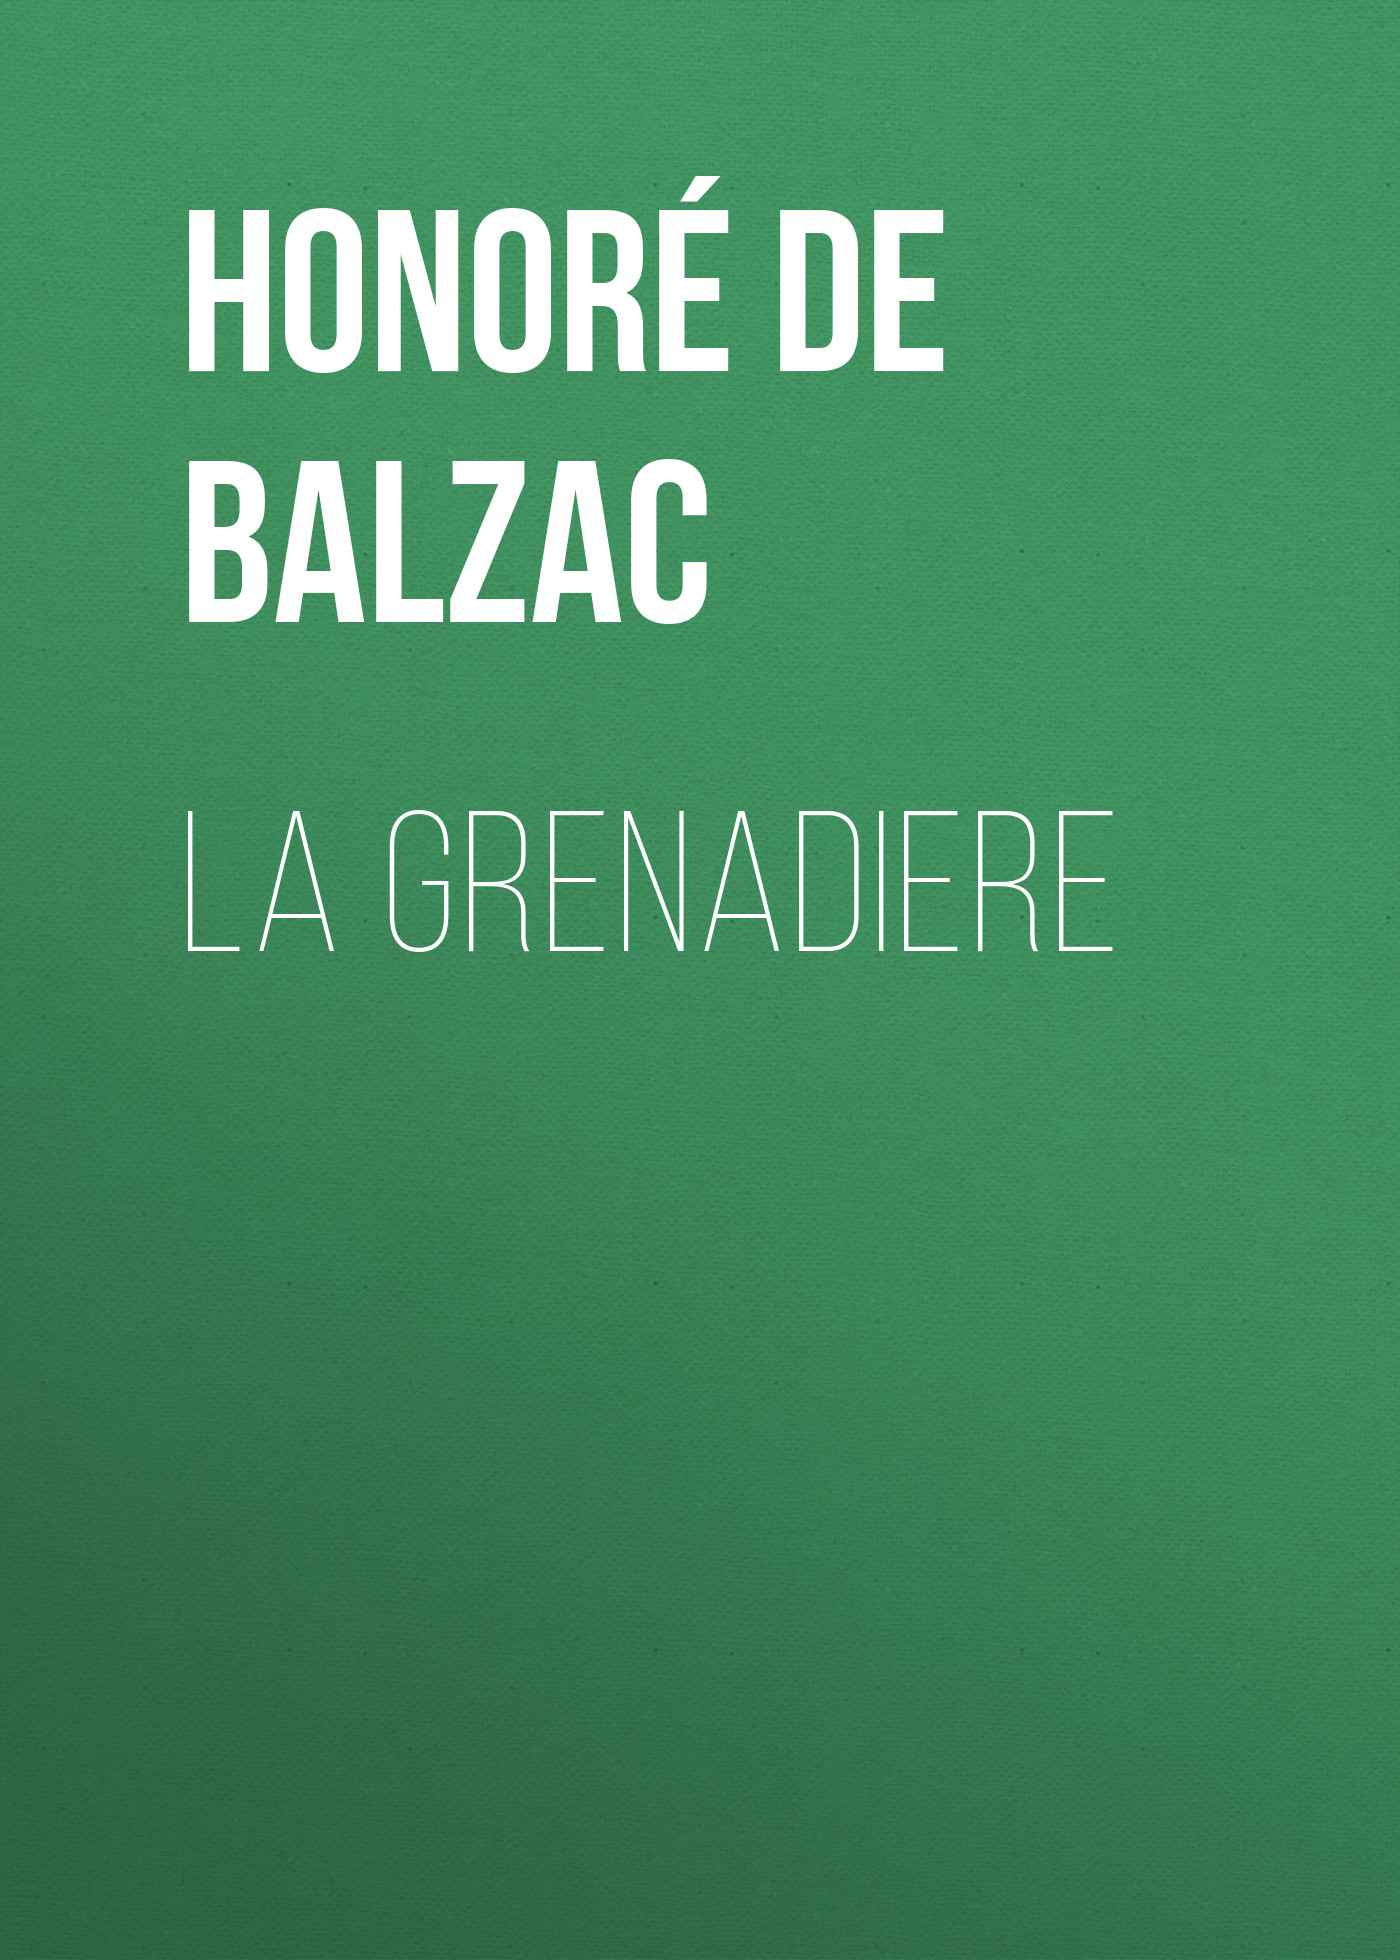 Книга La Grenadiere из серии , созданная Honoré Balzac, может относится к жанру Литература 19 века, Зарубежная старинная литература, Зарубежная классика. Стоимость электронной книги La Grenadiere с идентификатором 25020811 составляет 0 руб.